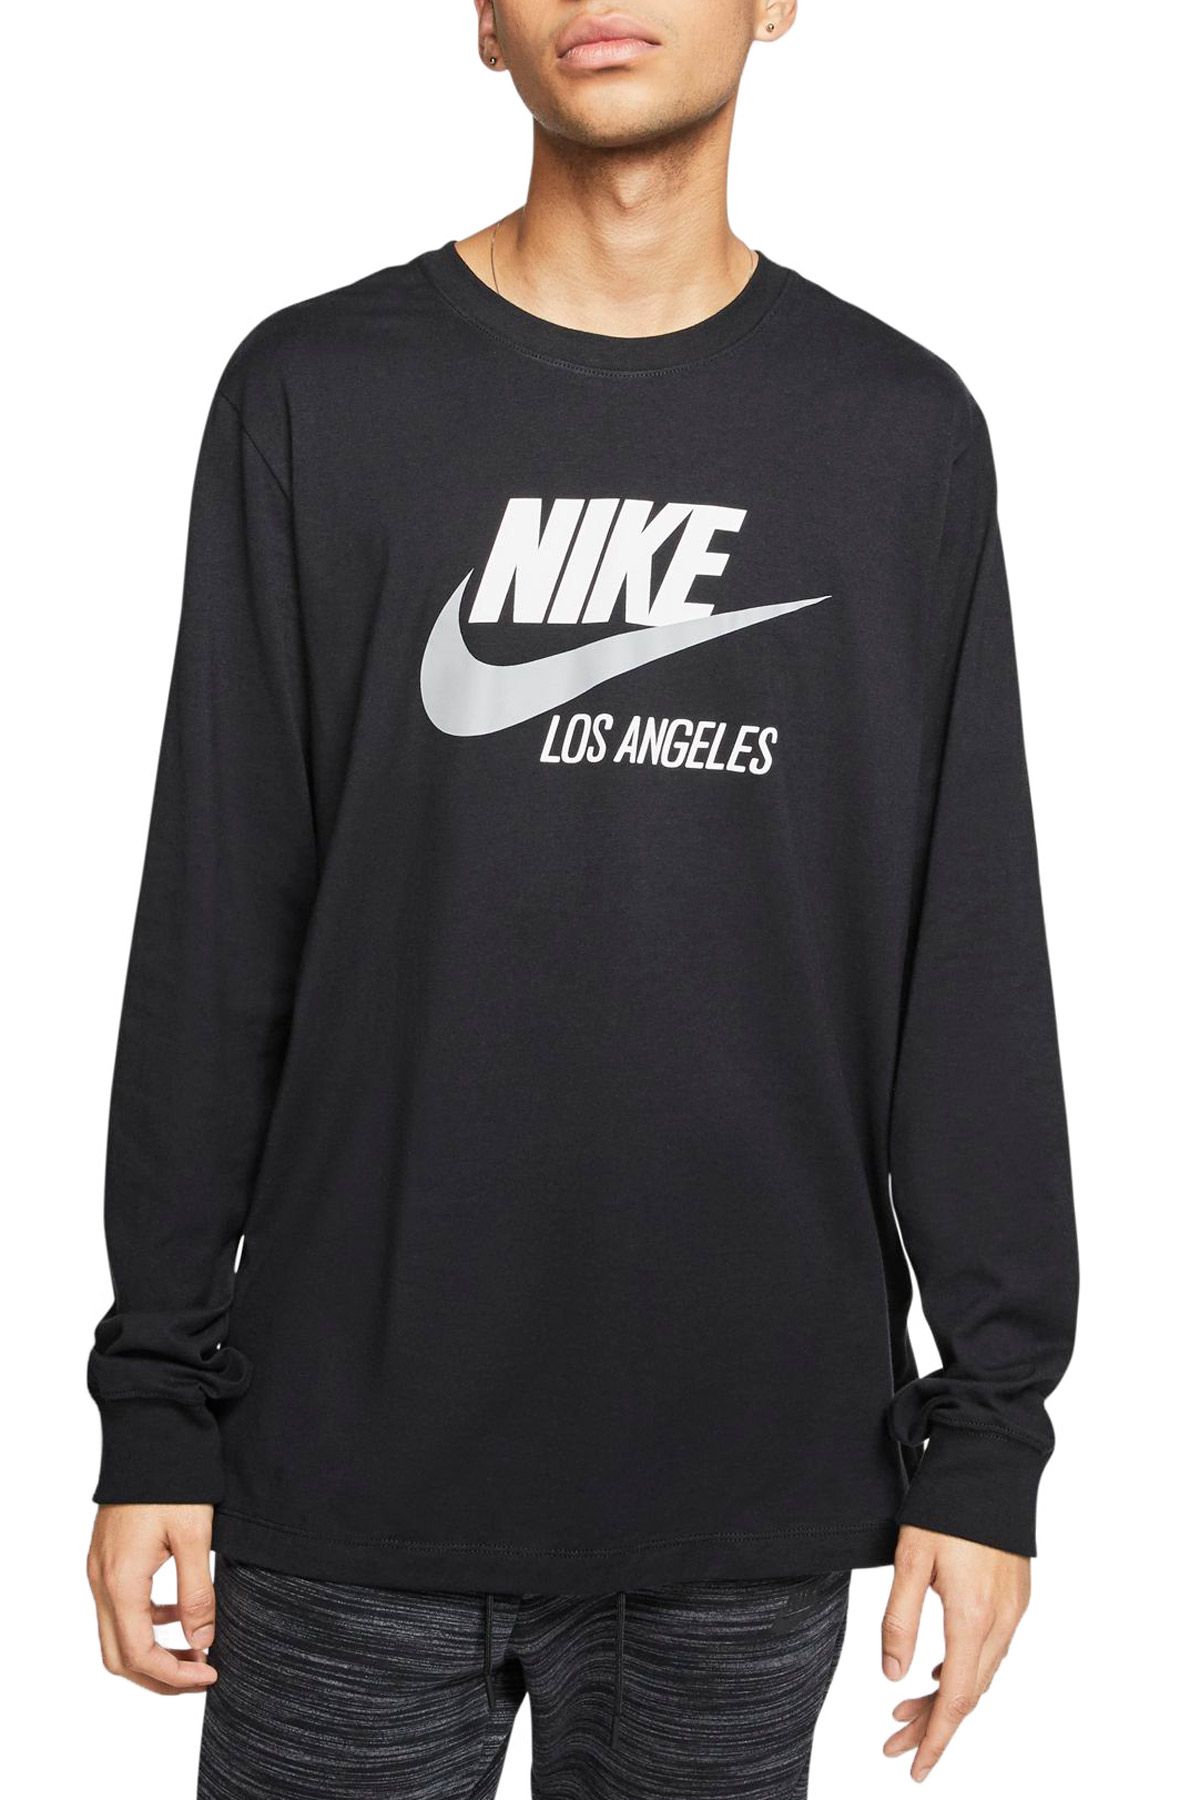 Nike NBA LA Lakers Tee Long Sleeve Shirt Men's XL